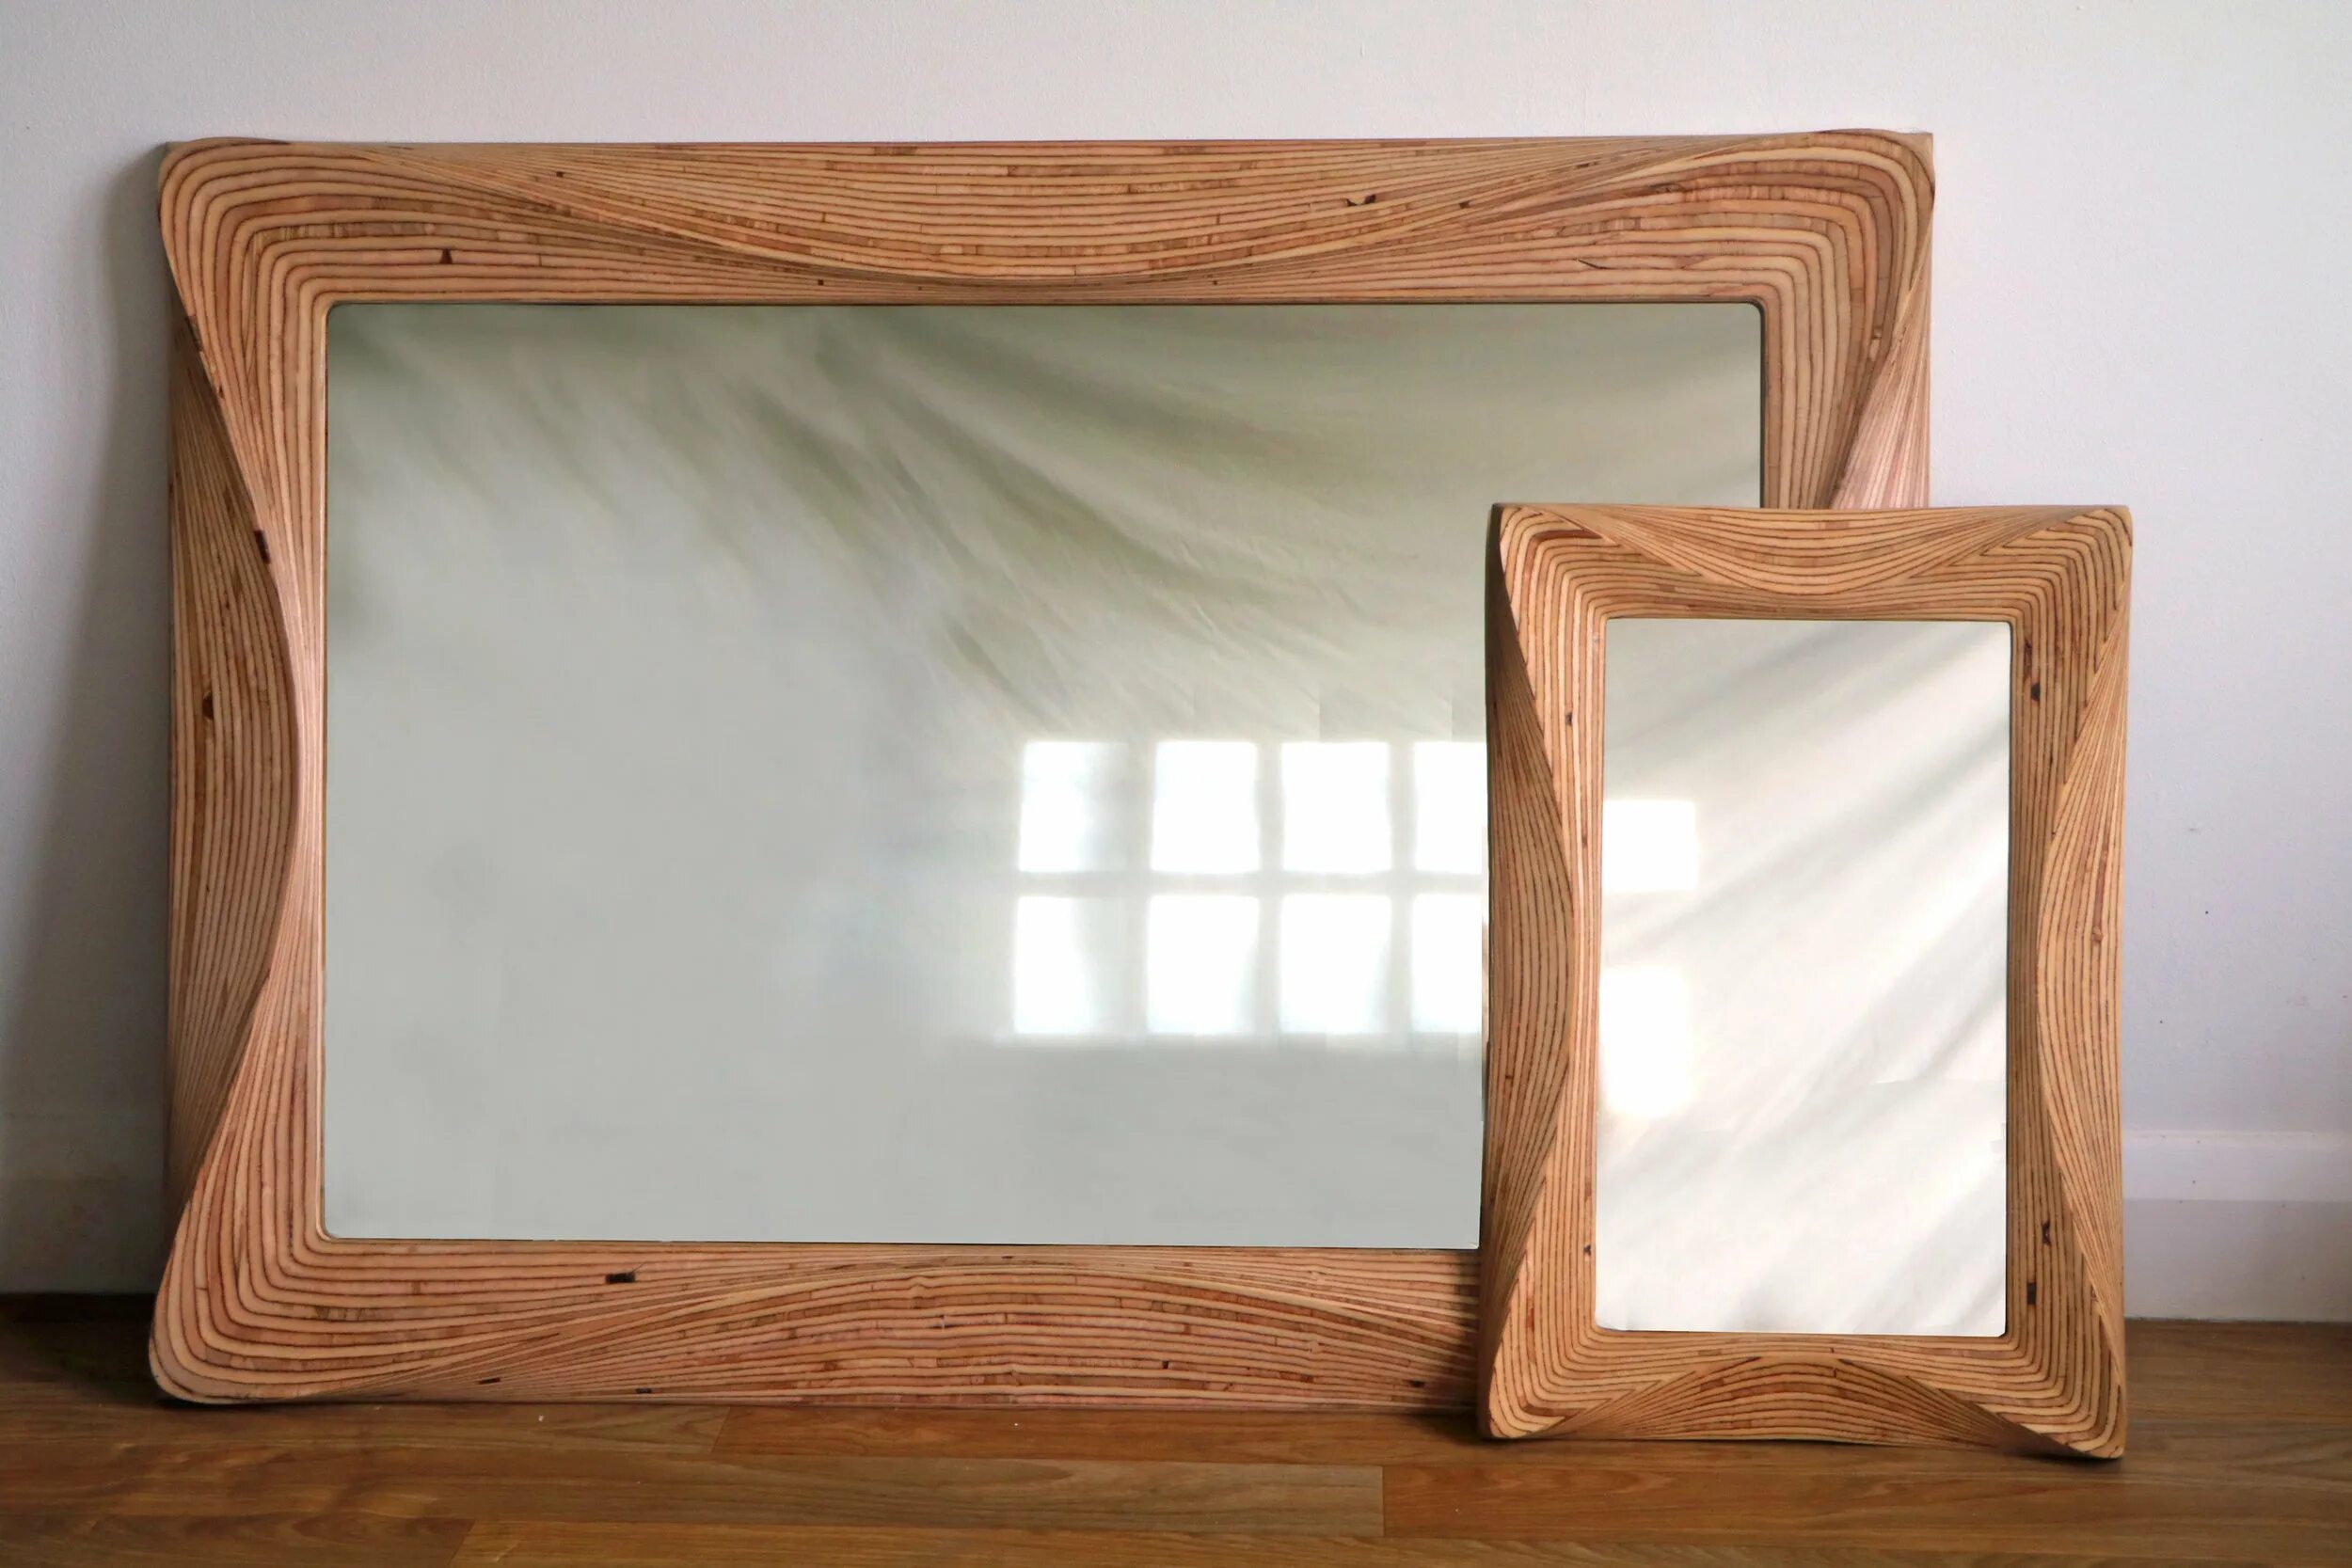 Зеркало в деревенской раме. Деревянная рамка для зеркала. Зеркало с деревянной рамой. Рамка для зеркала из дерева. Изготовление деревянных рамок